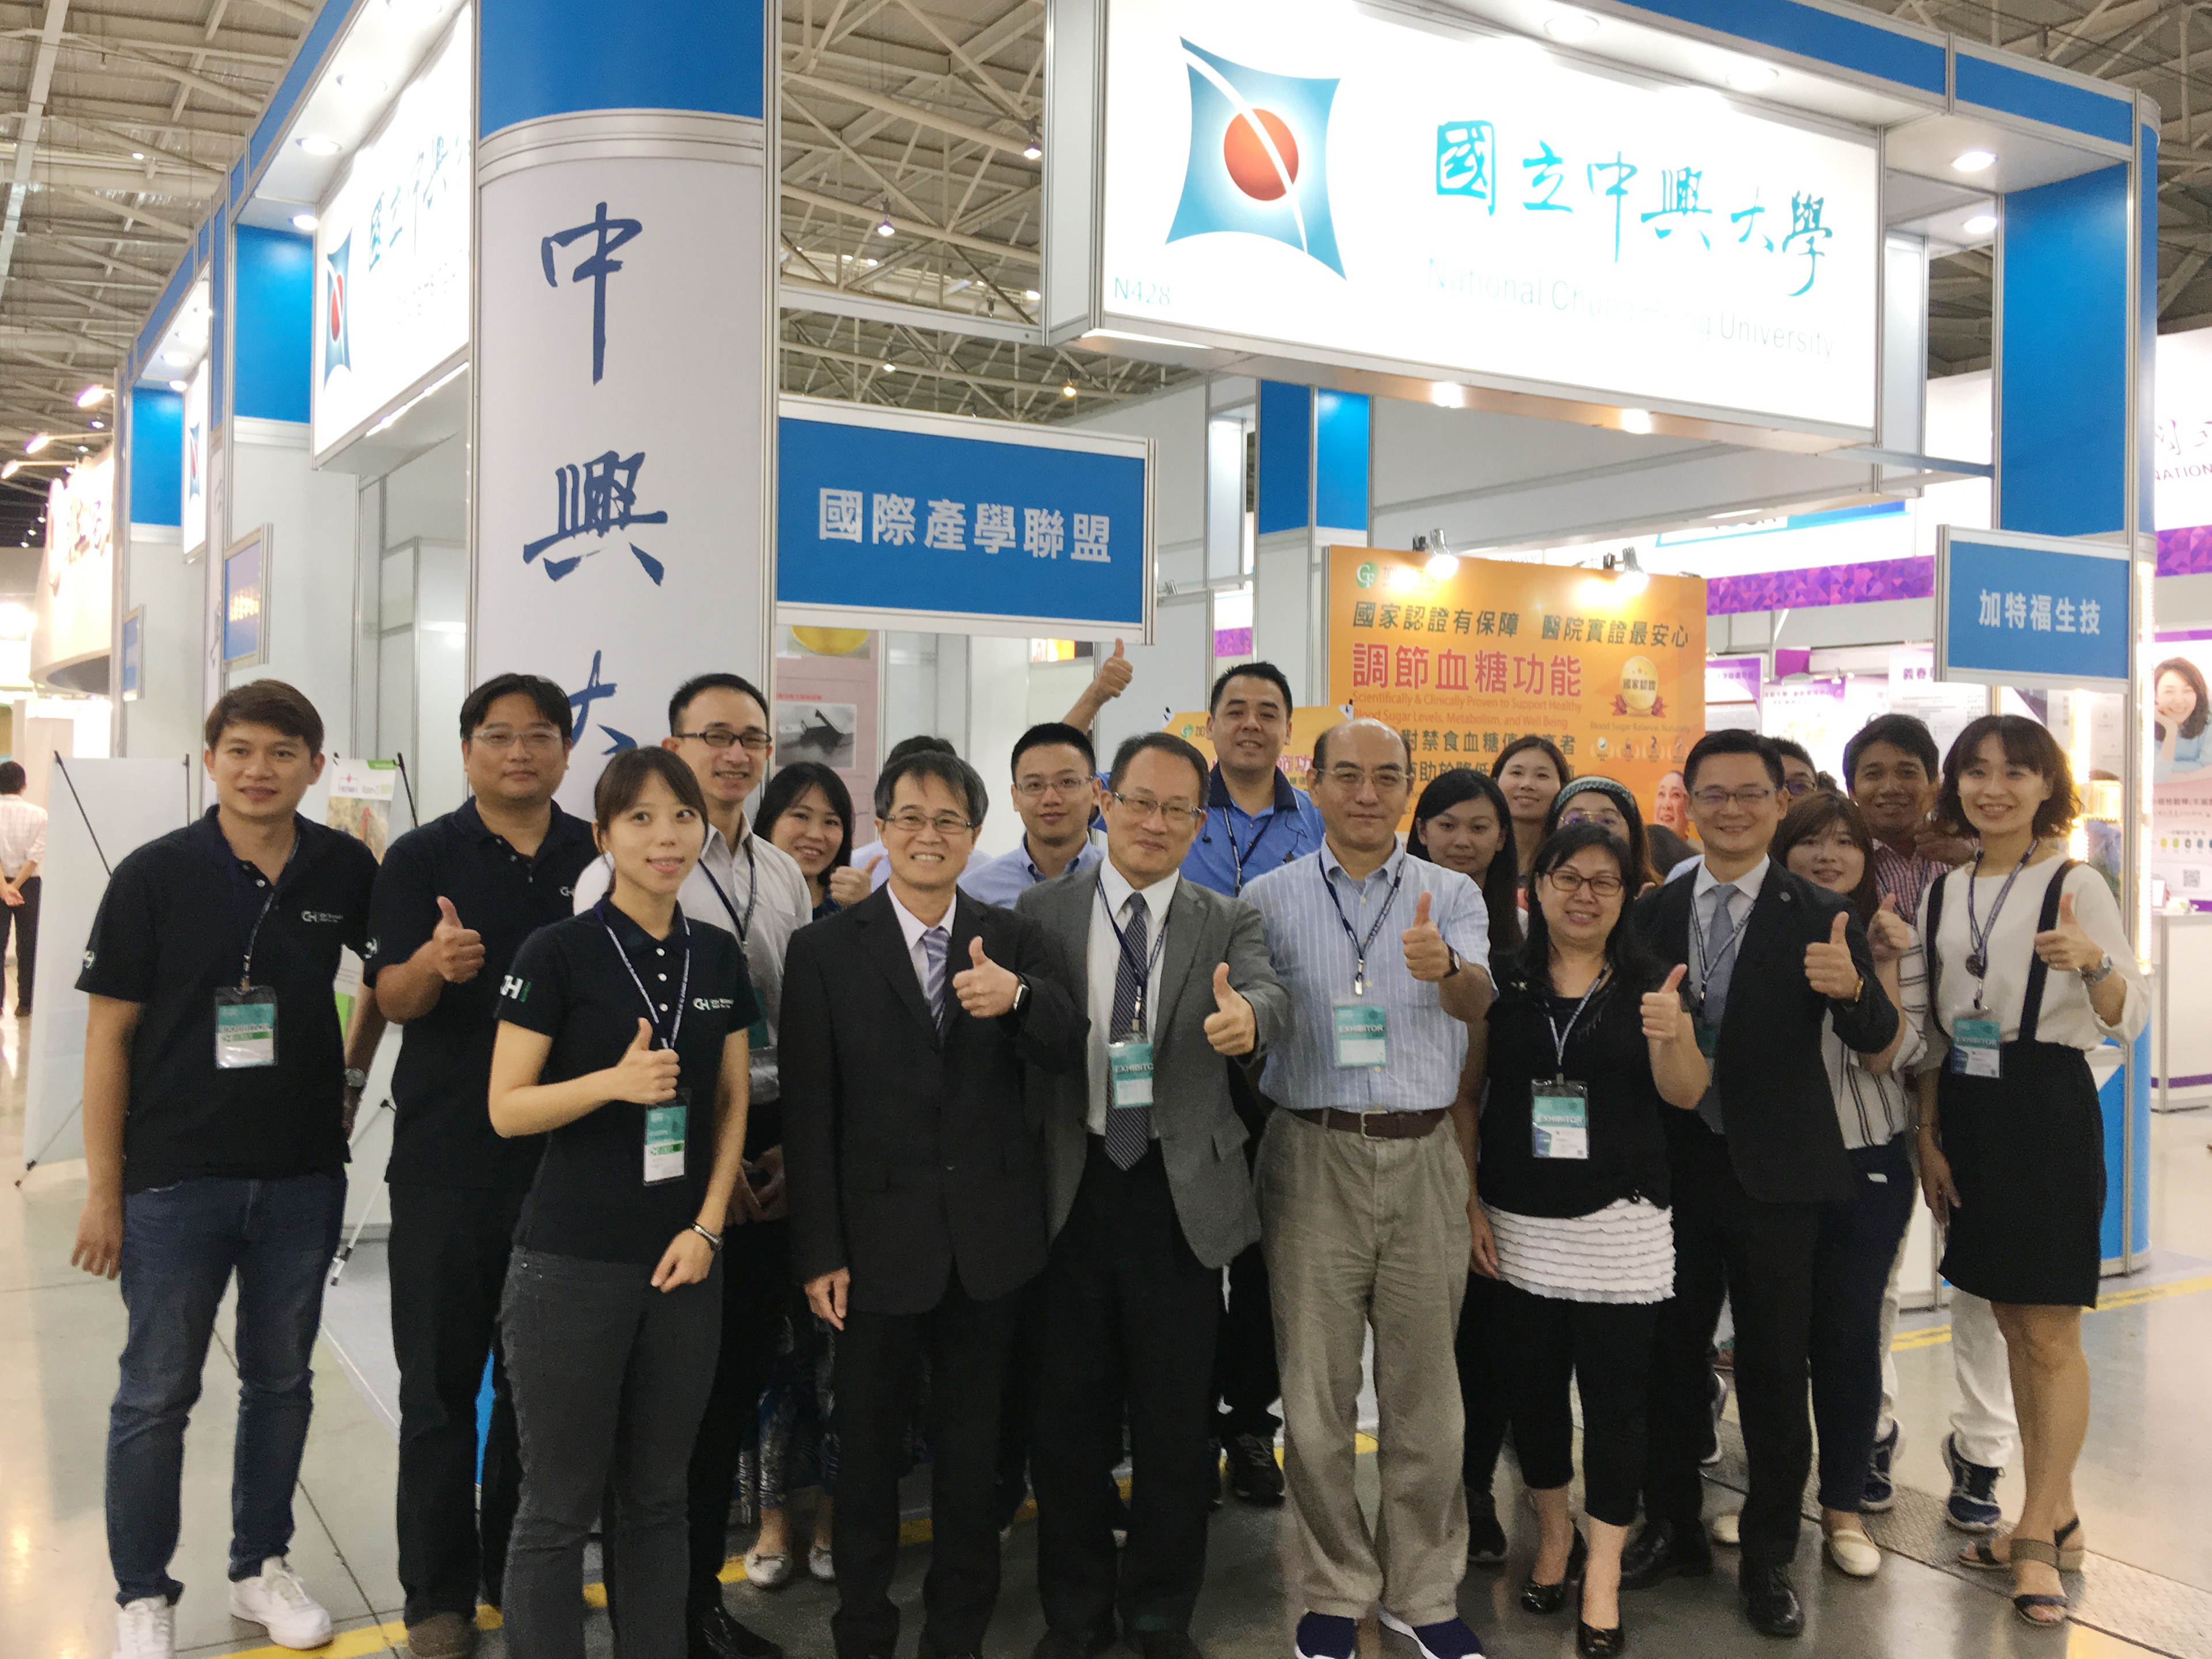 中興大學國際產學聯盟與學研團隊和聯盟會員共同參與「2018臺灣生物科技大展」